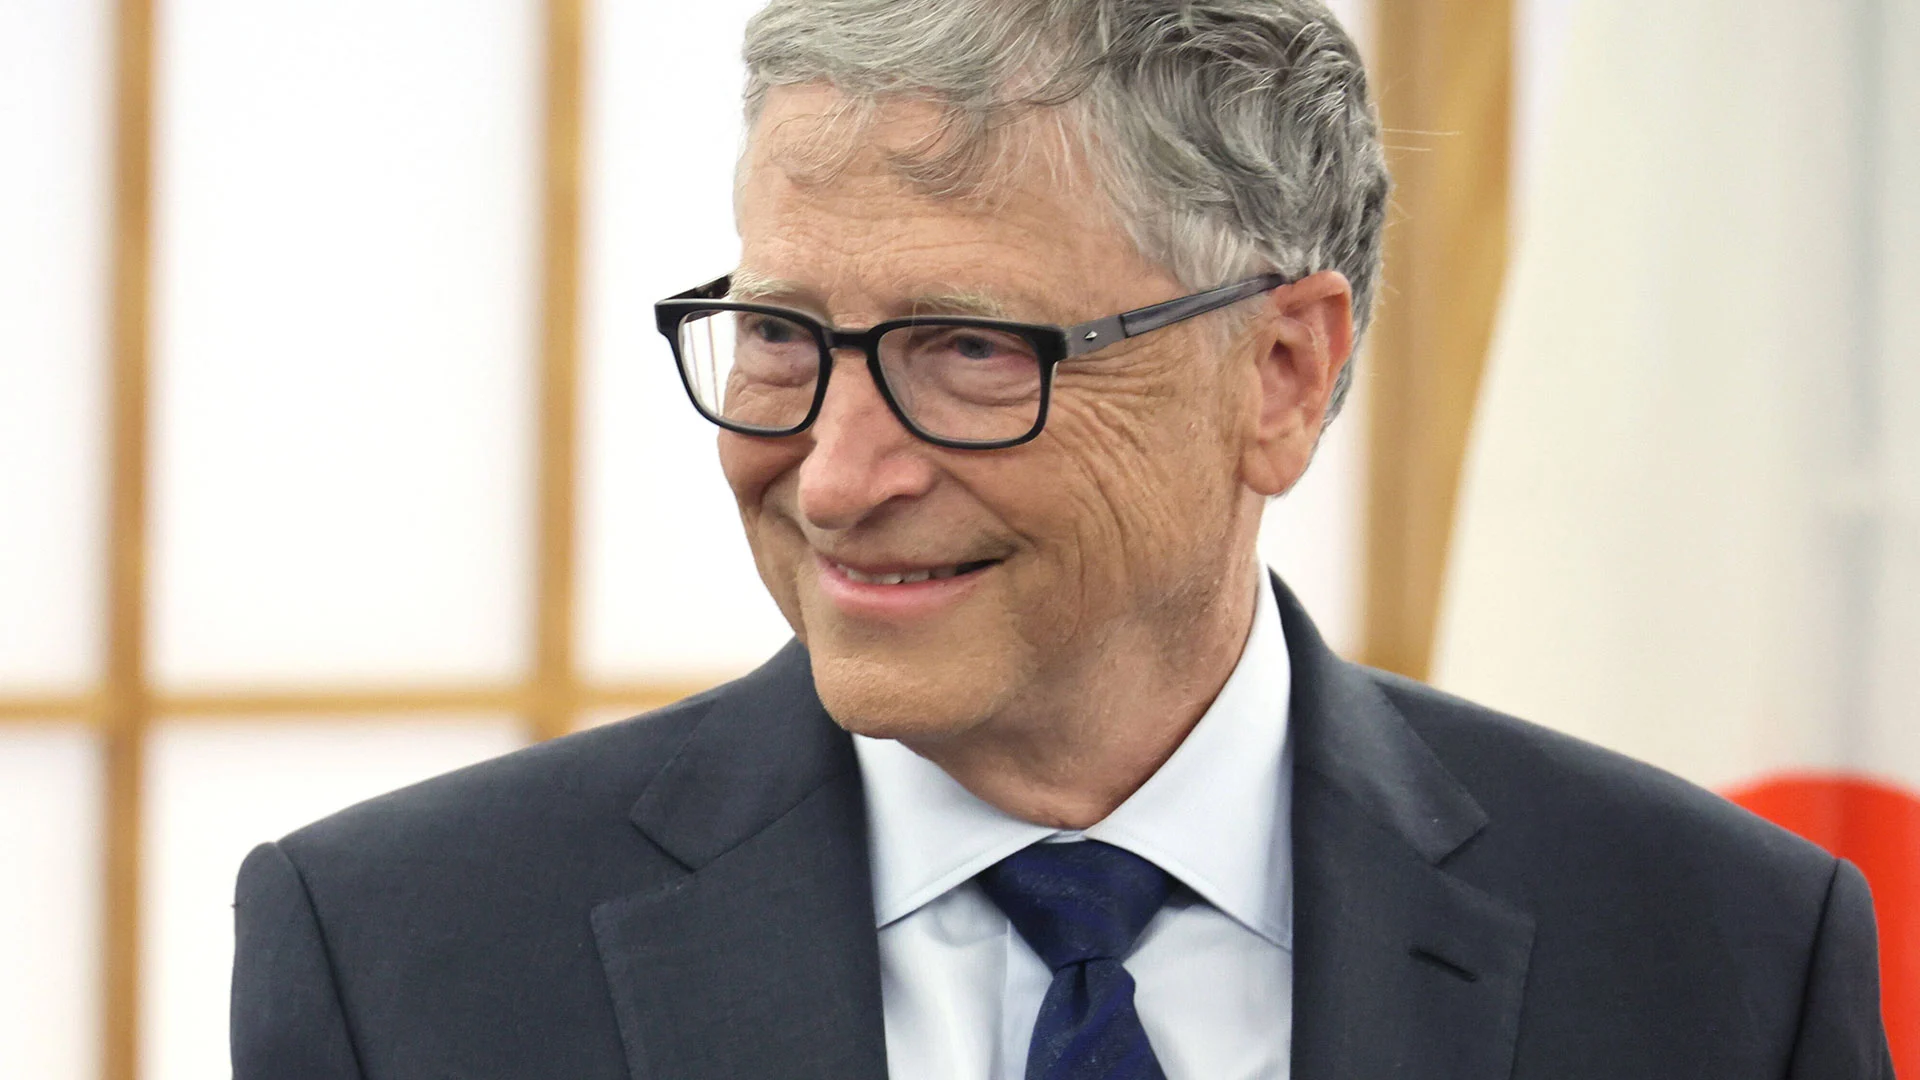 80% des Portfolios von Bill Gates bestehen aus nur diesen vier Aktien  (Foto: AFLO/IMAGO)